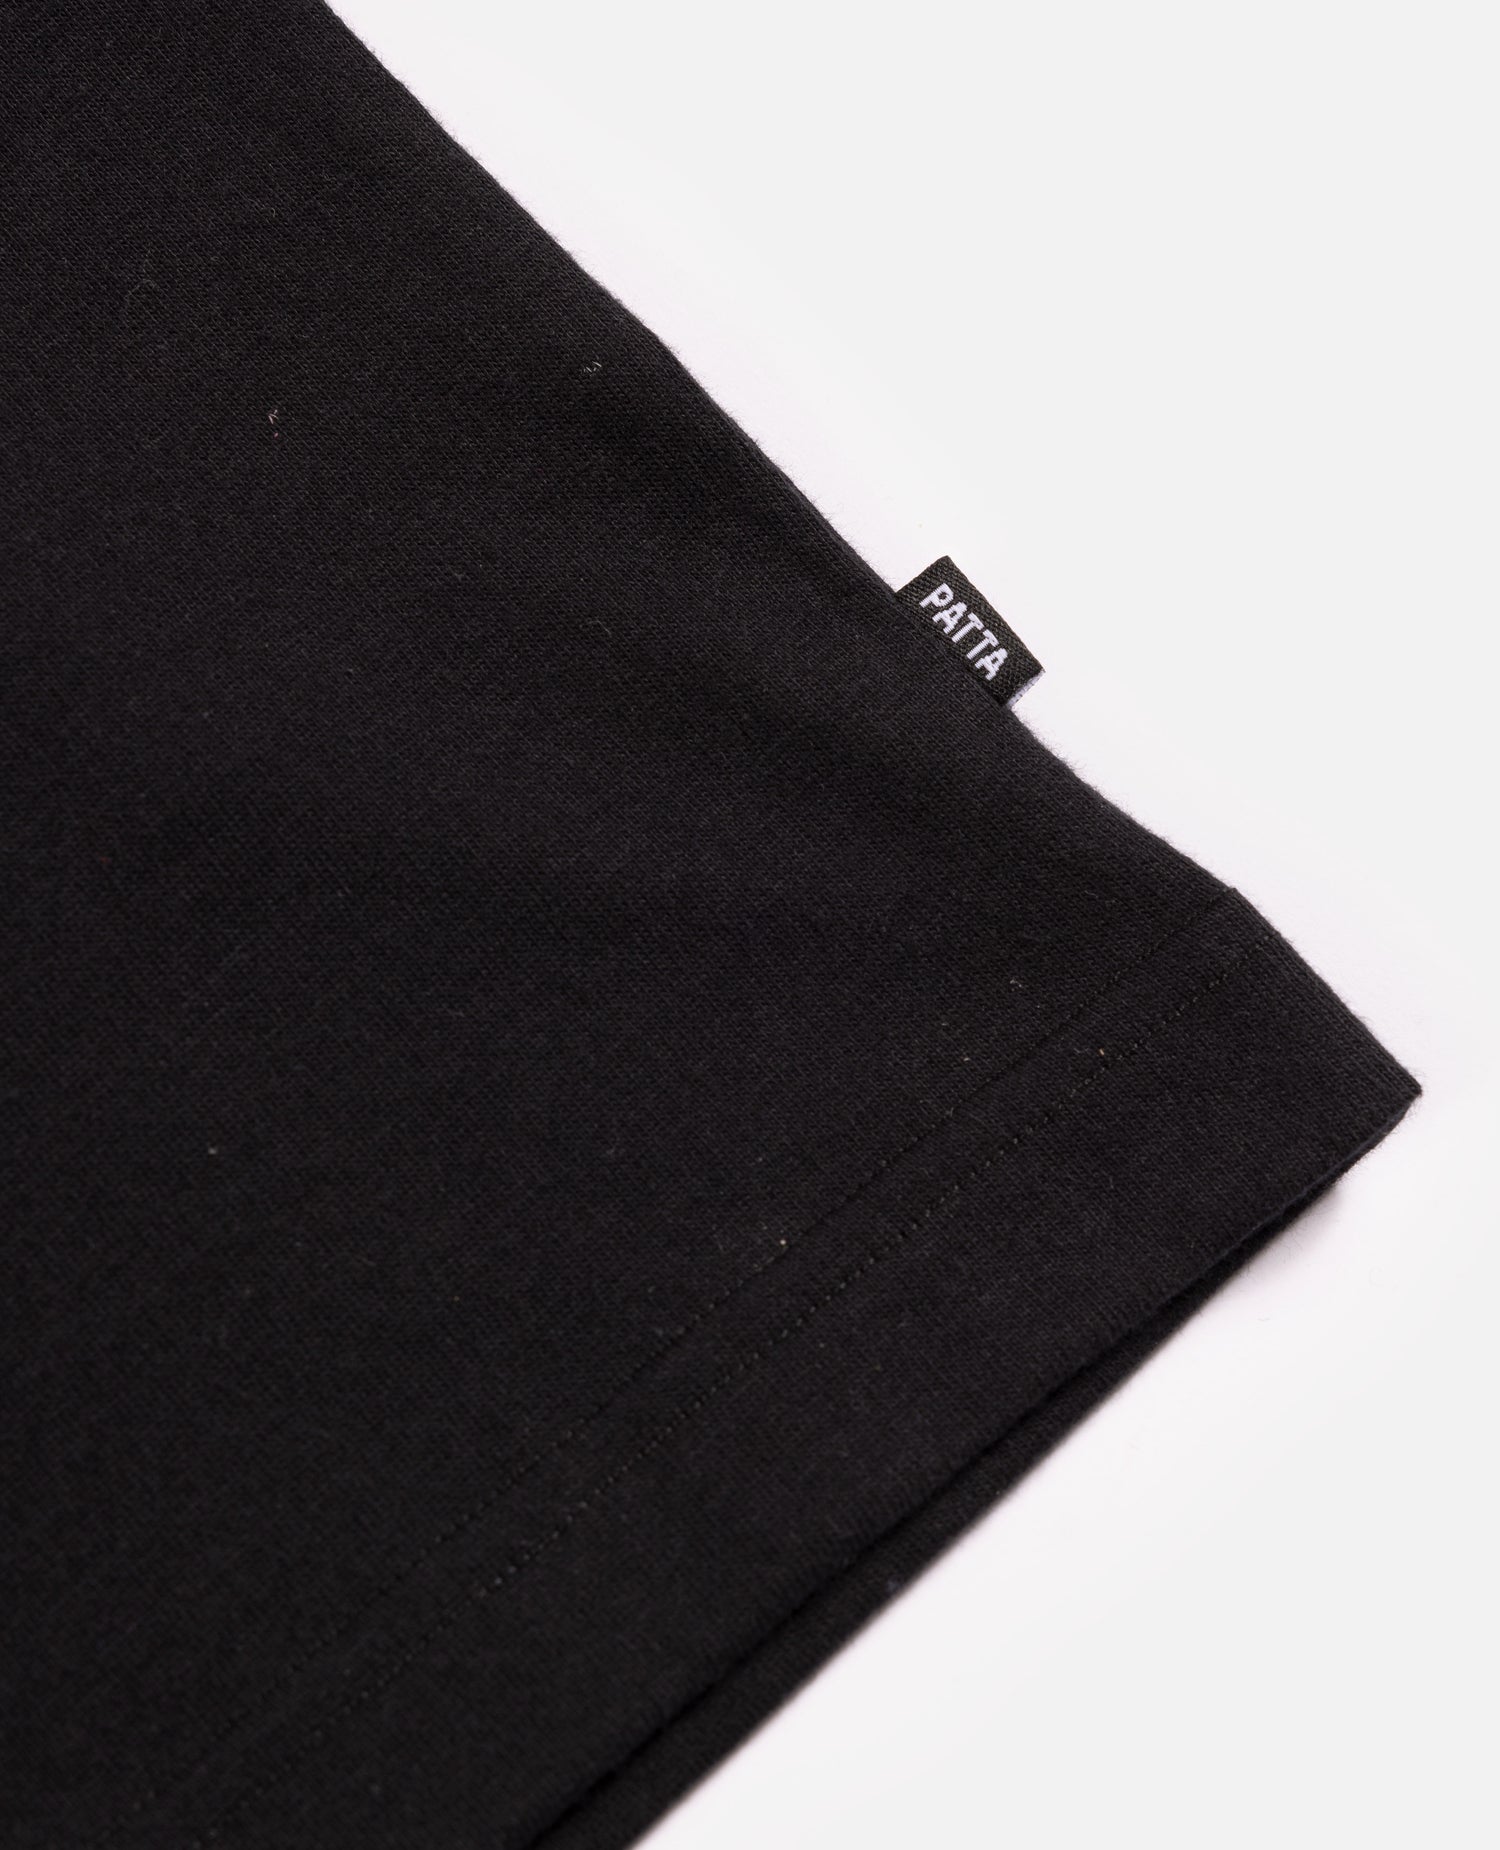 Patta Revolution T-Shirt (Black) – Patta UK